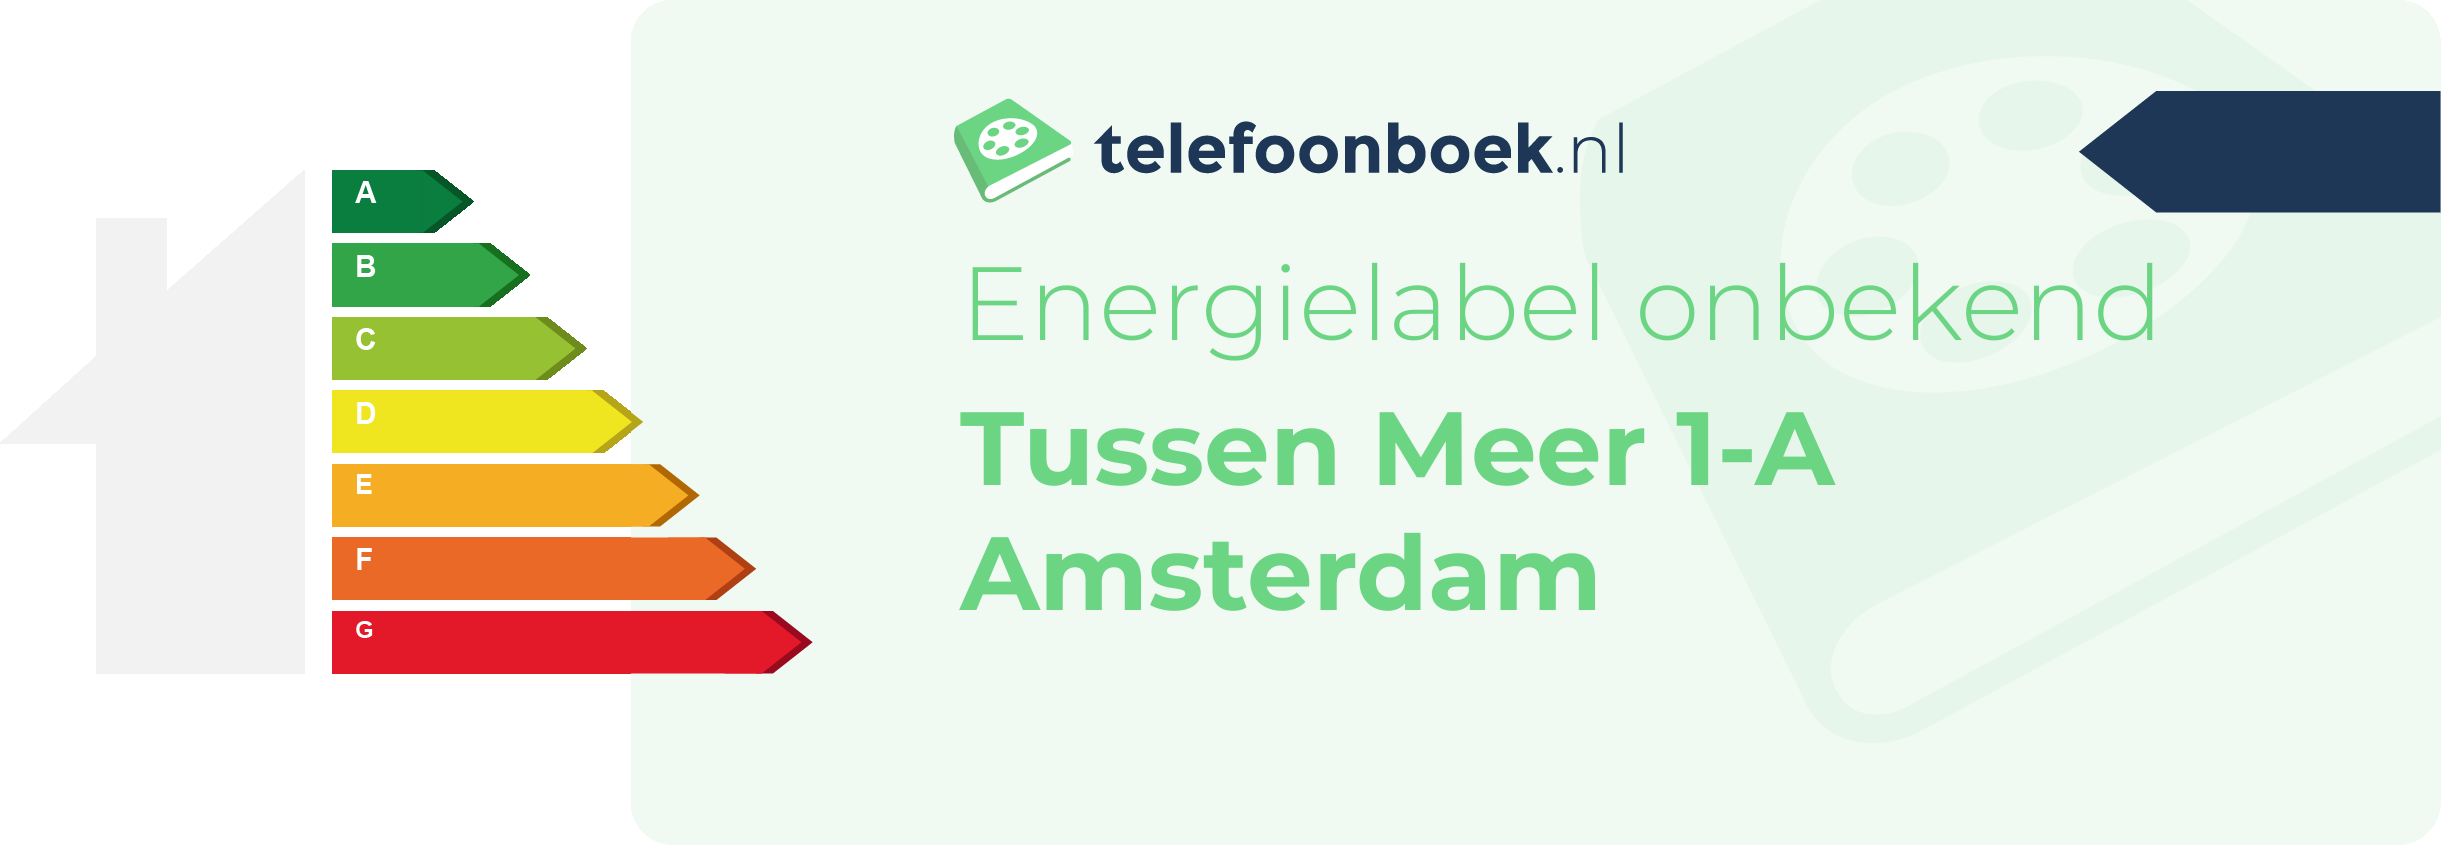 Energielabel Tussen Meer 1-A Amsterdam